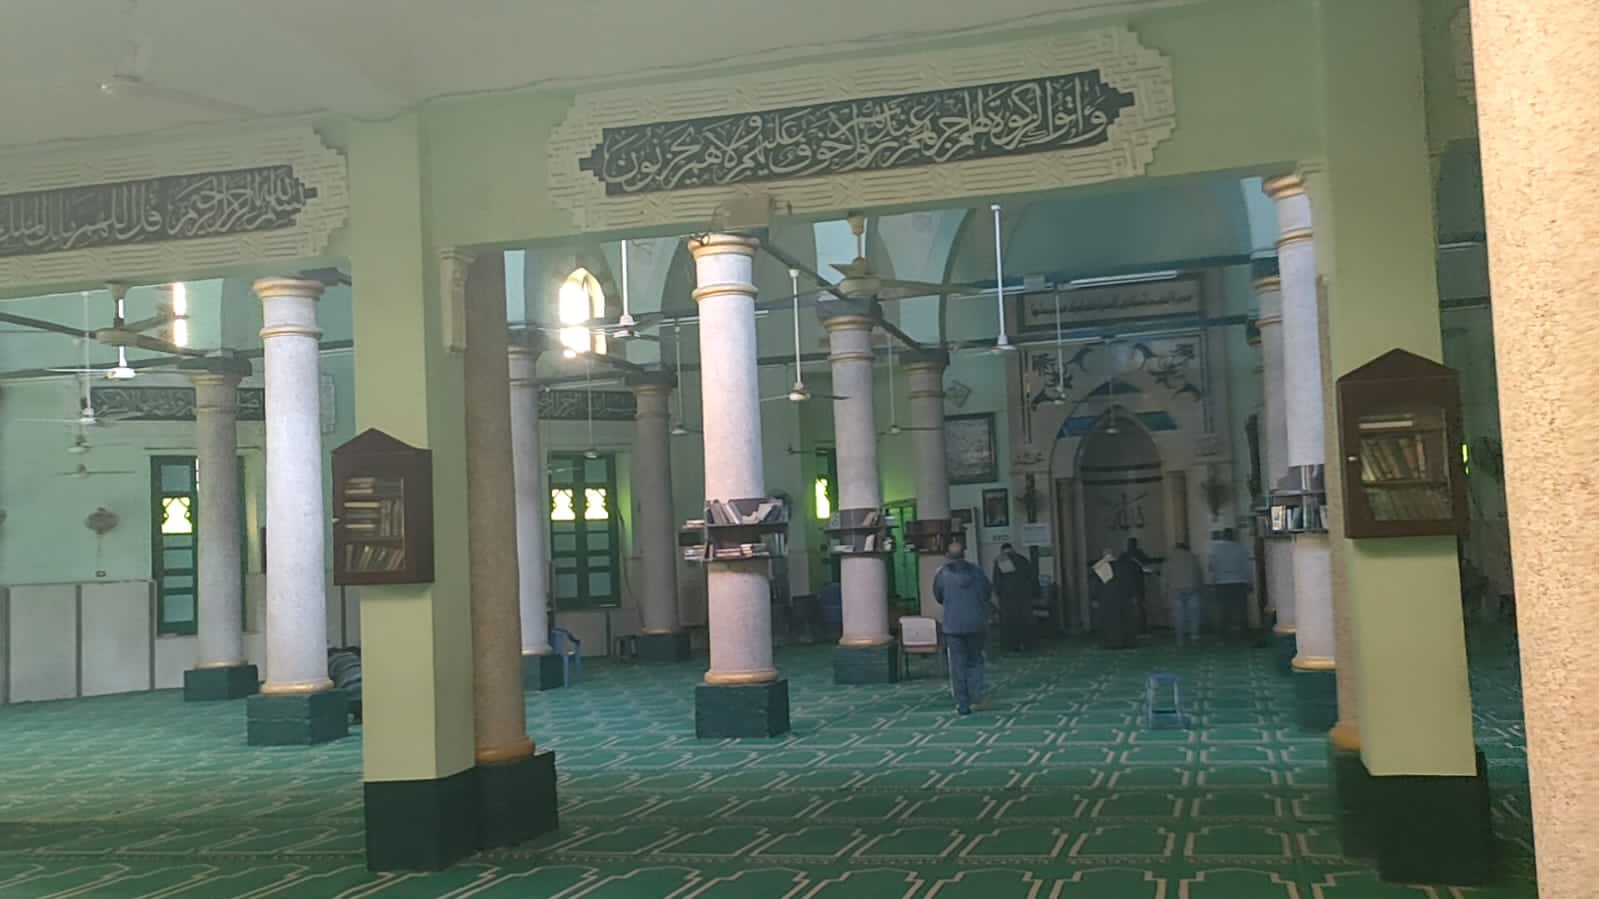 المسجد الأموي التاريخي بأسيوط مقام على مساحة 3000 متر